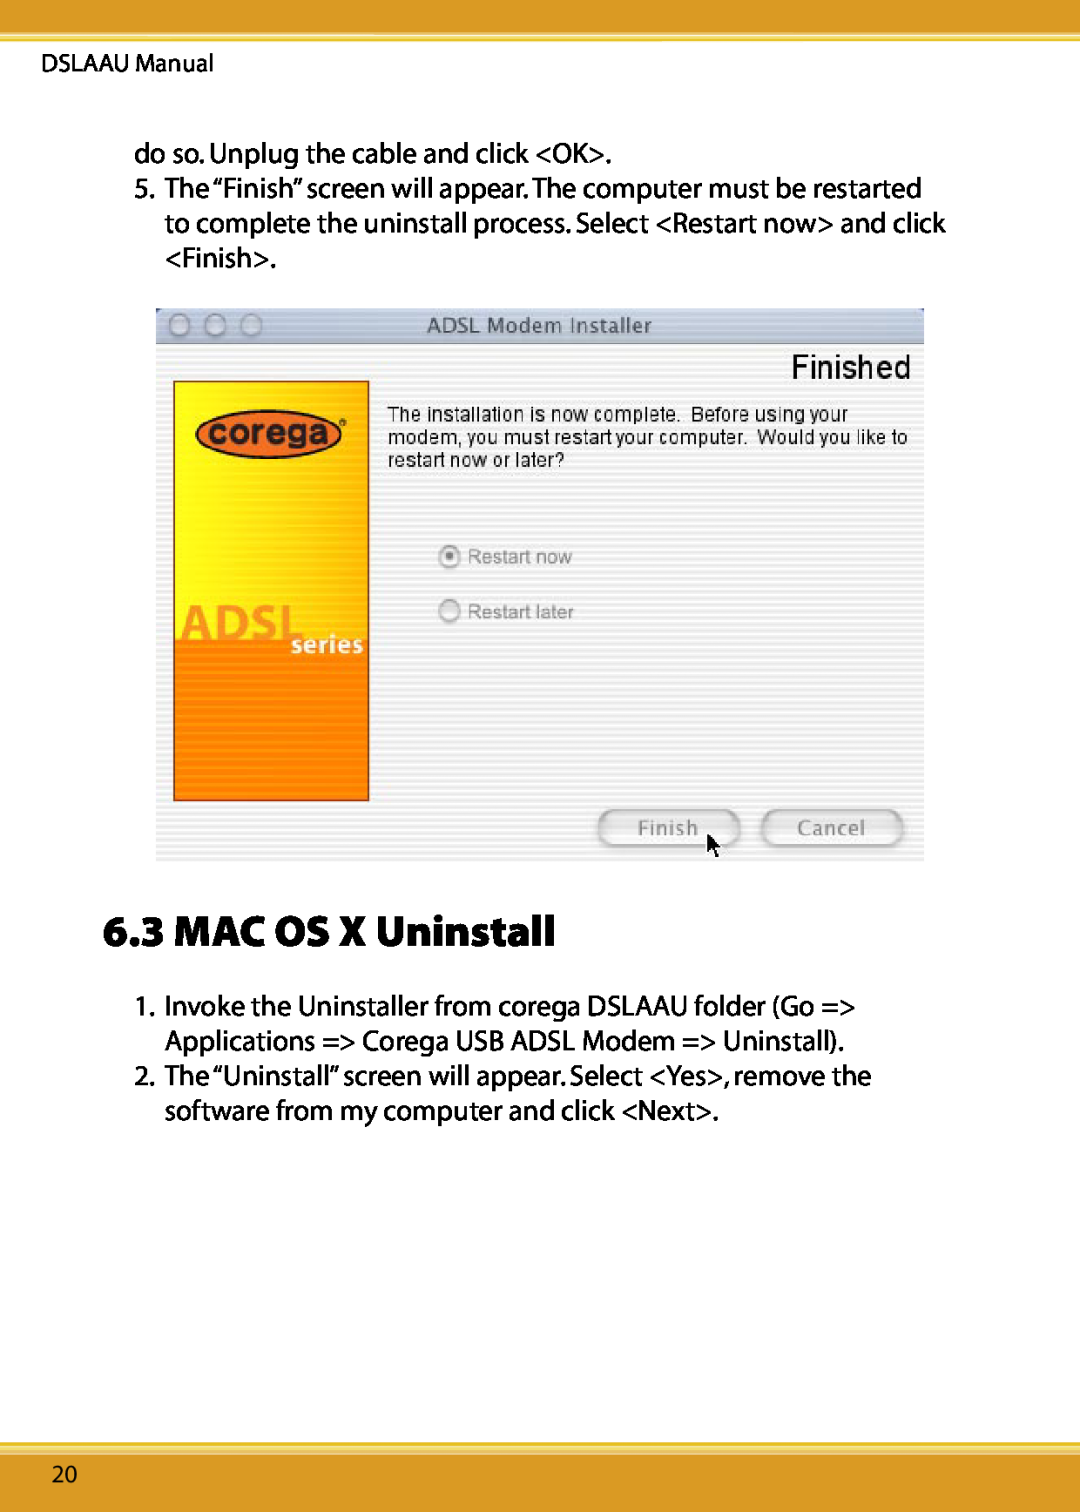 Corega user manual MAC OS X Uninstall, do so. Unplug the cable and click OK, DSLAAU Manual 